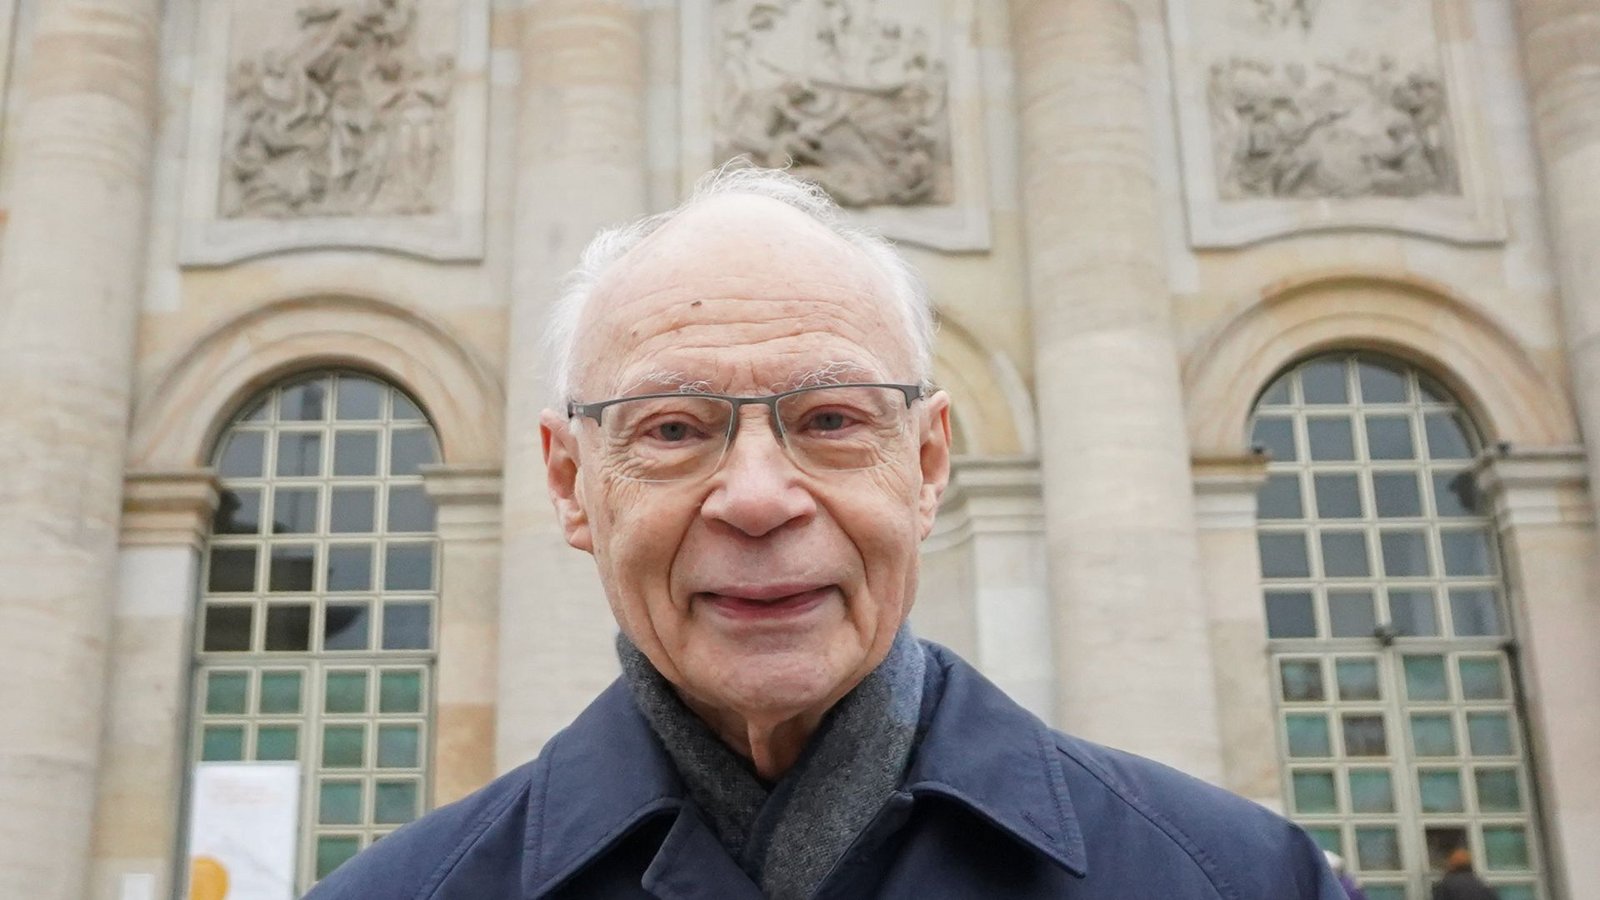 Hans Joachim Meyer ist im Alter von 87 Jahren verstorben.Foto: dpa/Jörg Carstensen